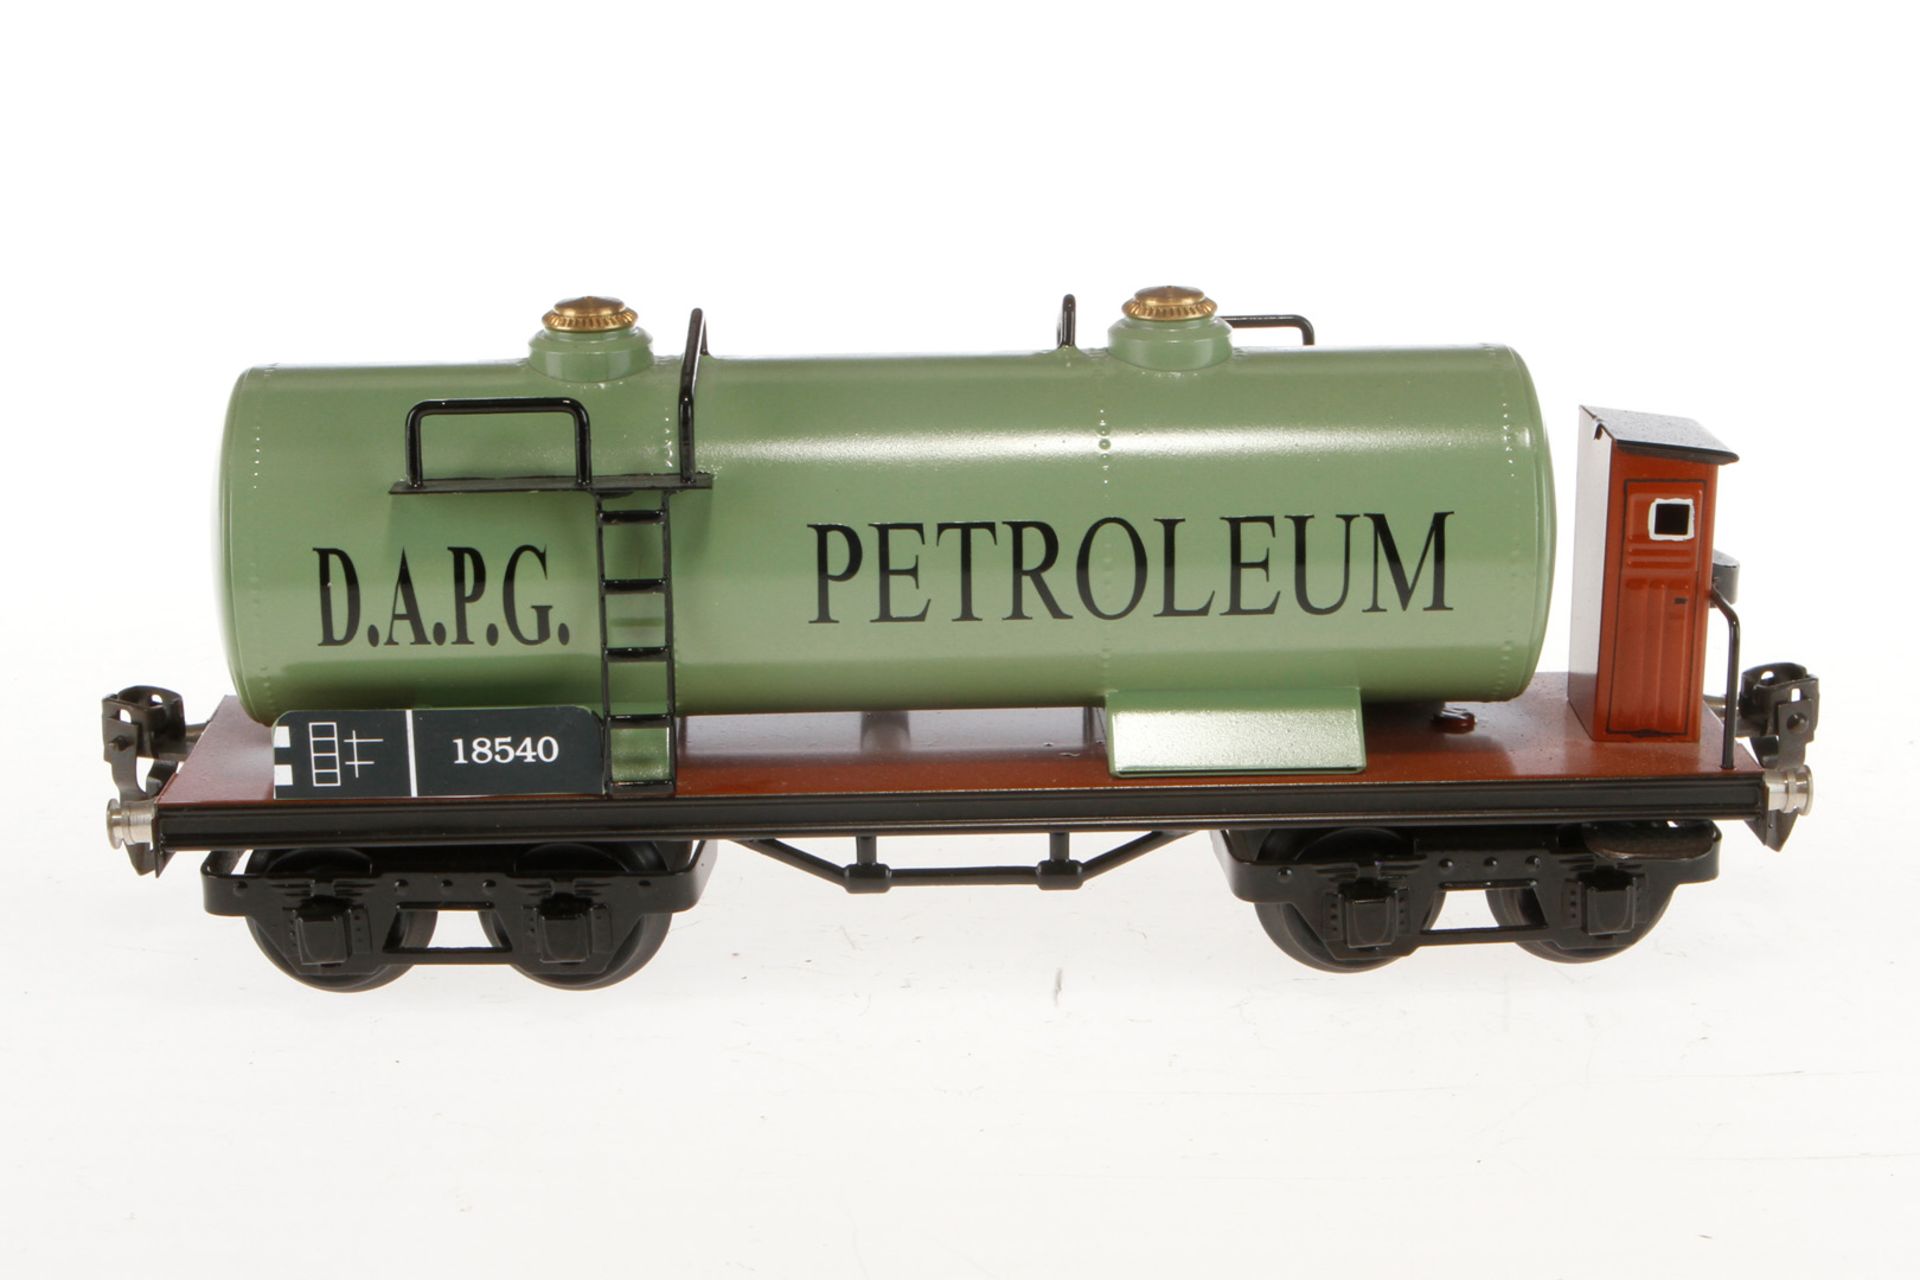 WD Petroleum Kesselwagen 1854, Spur 0, HL, mit BRH, kleine LS und leichte Alterungsspuren, L 24,5, - Image 3 of 3